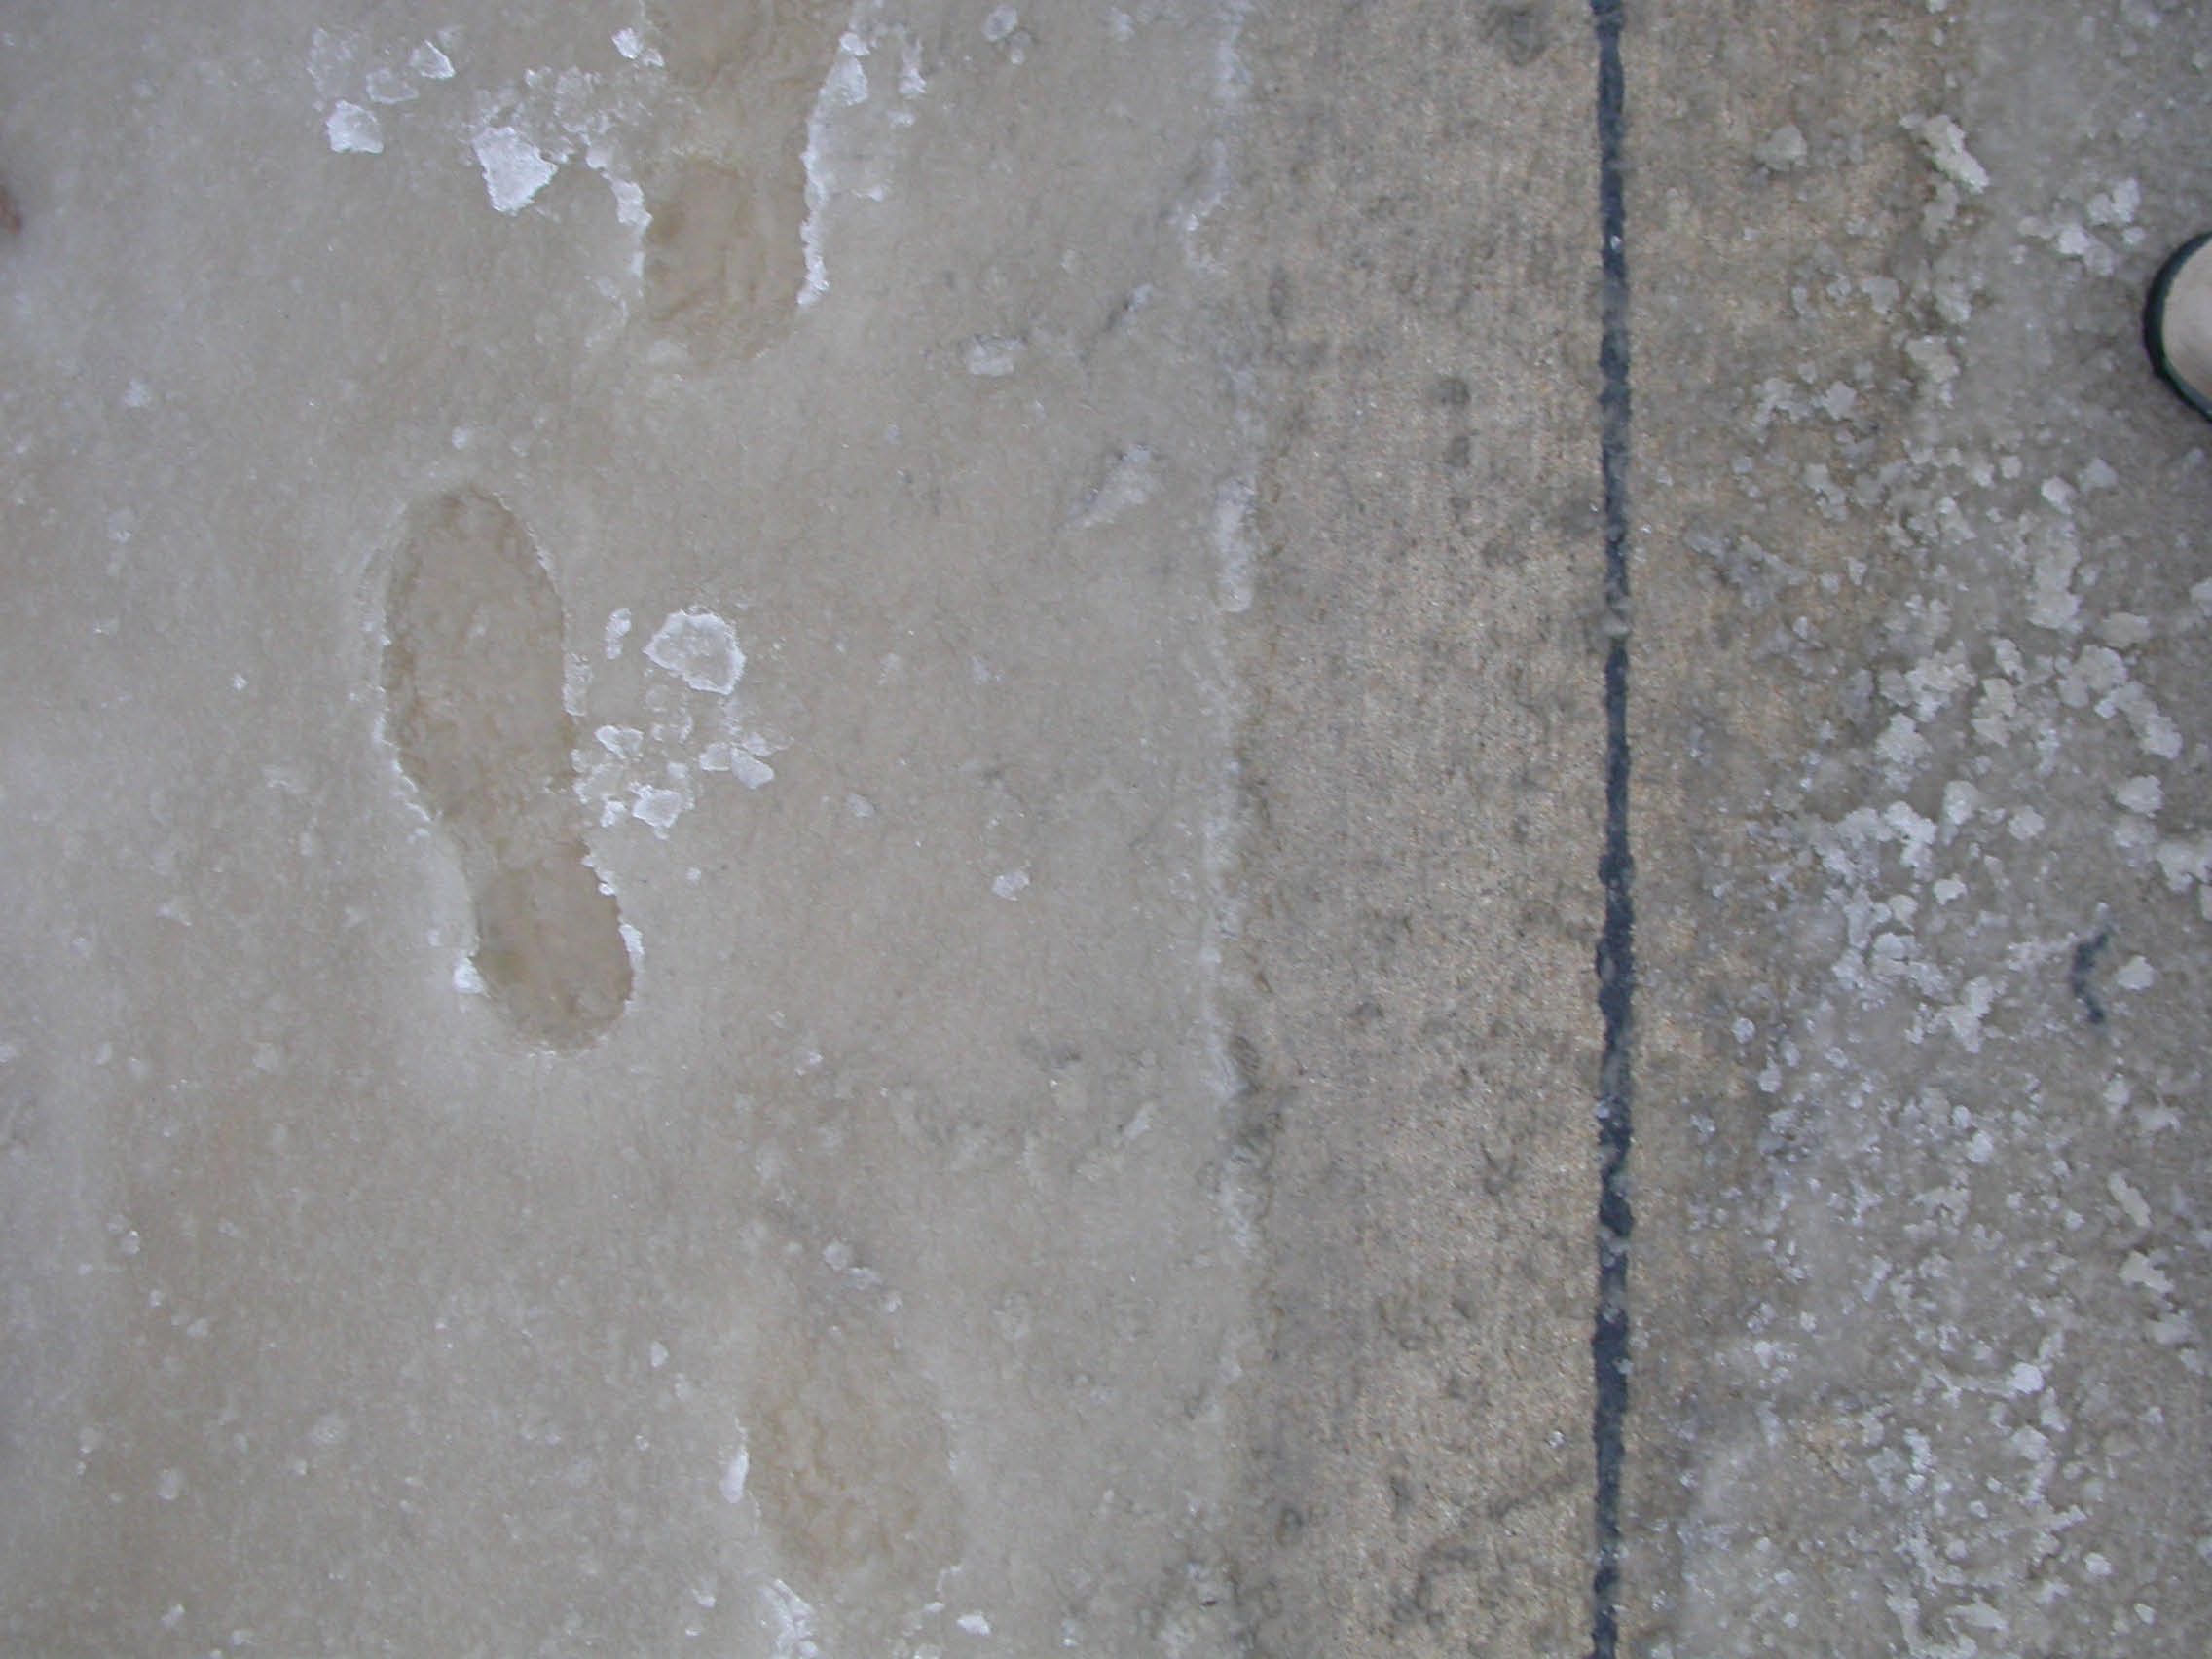 footprintstires.jpg